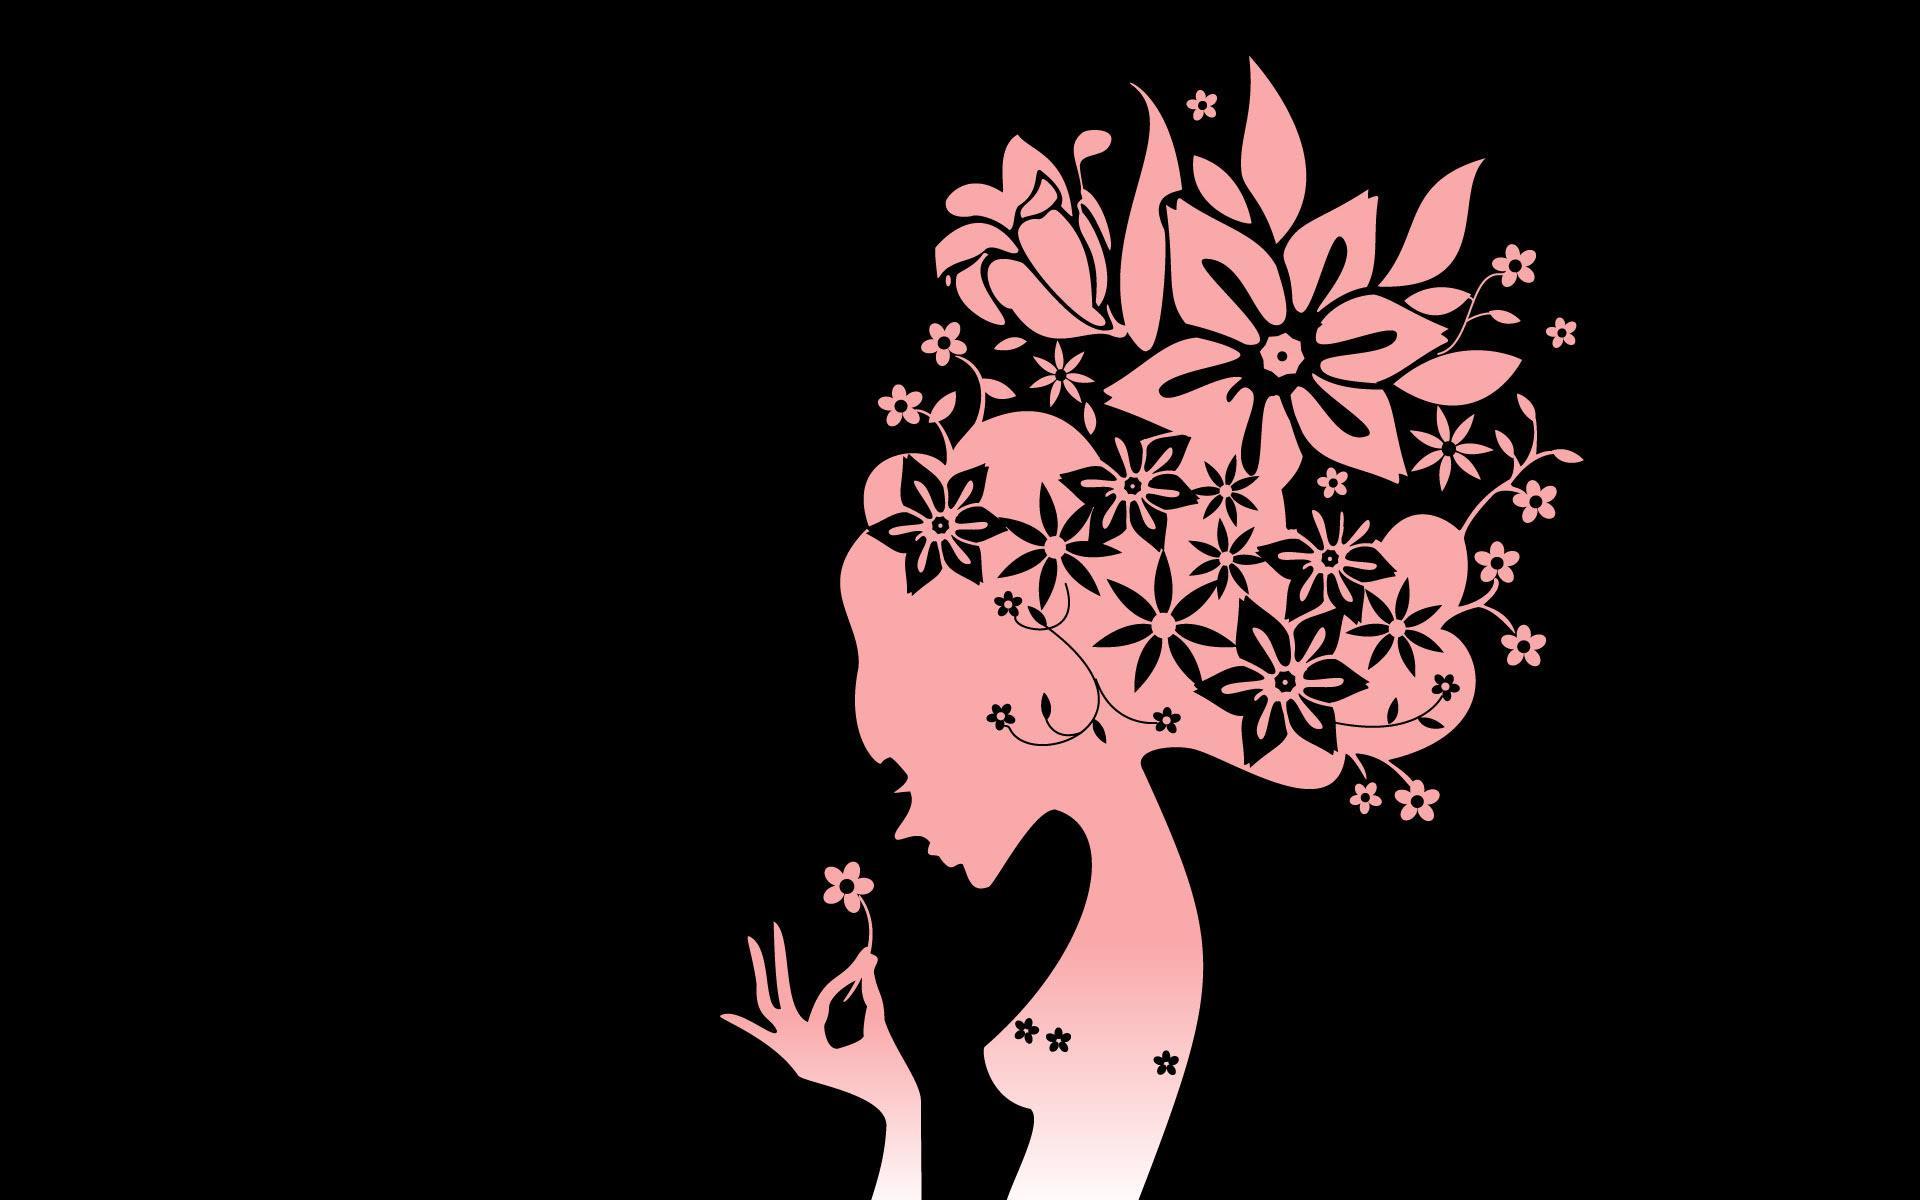 carta da parati per ragazze,disegno grafico,illustrazione,silhouette,pianta,albero